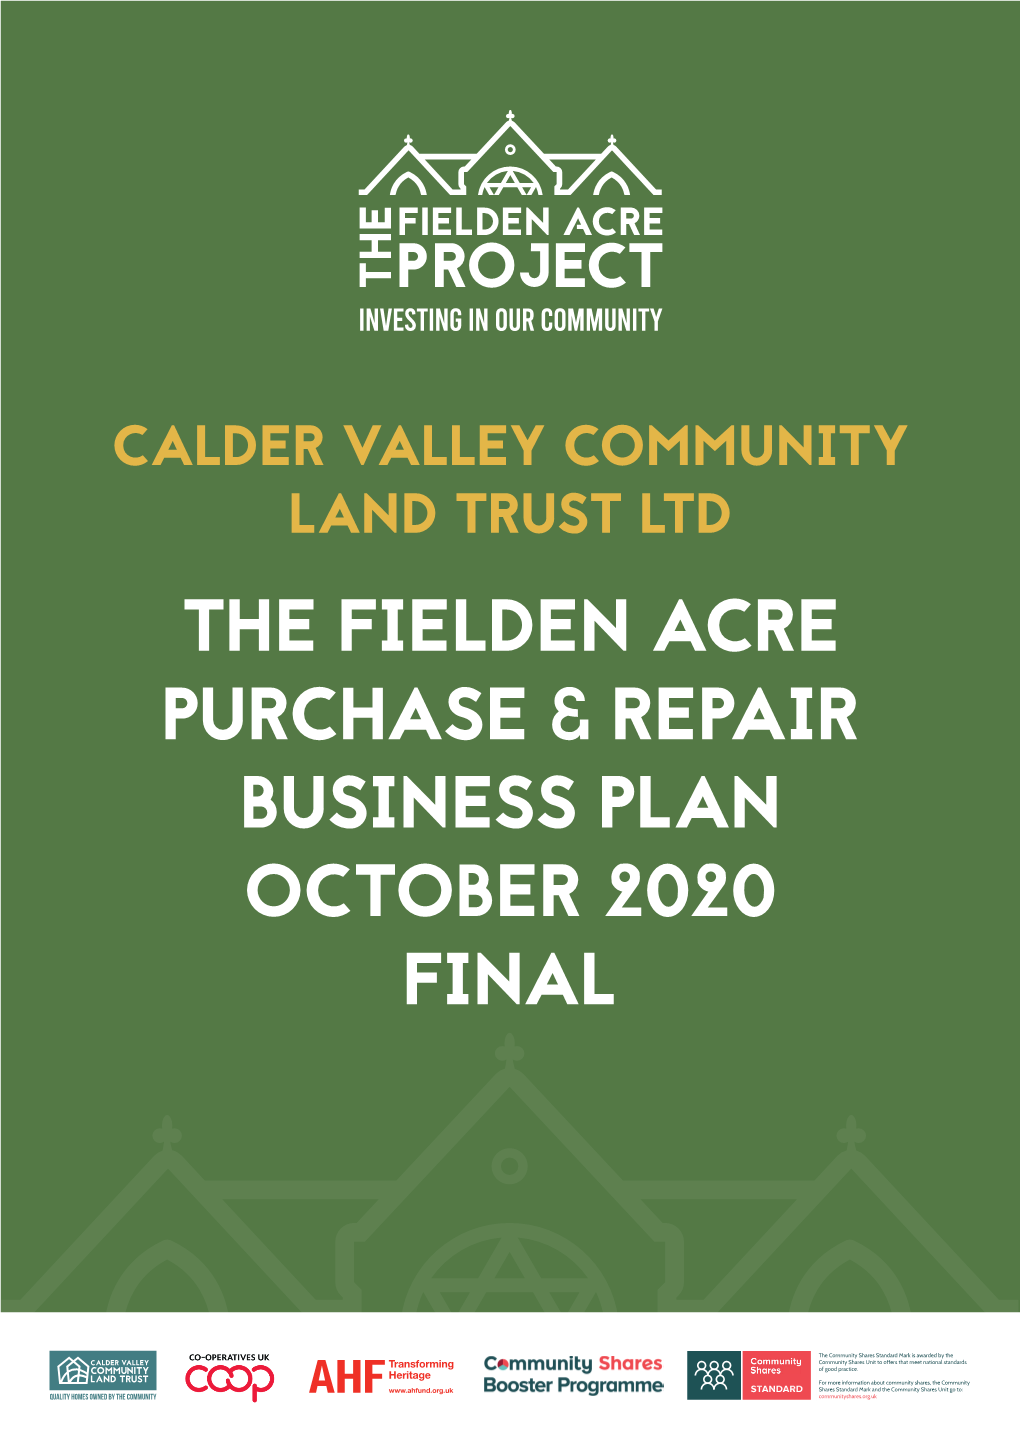 Fielden Acre Business Plan